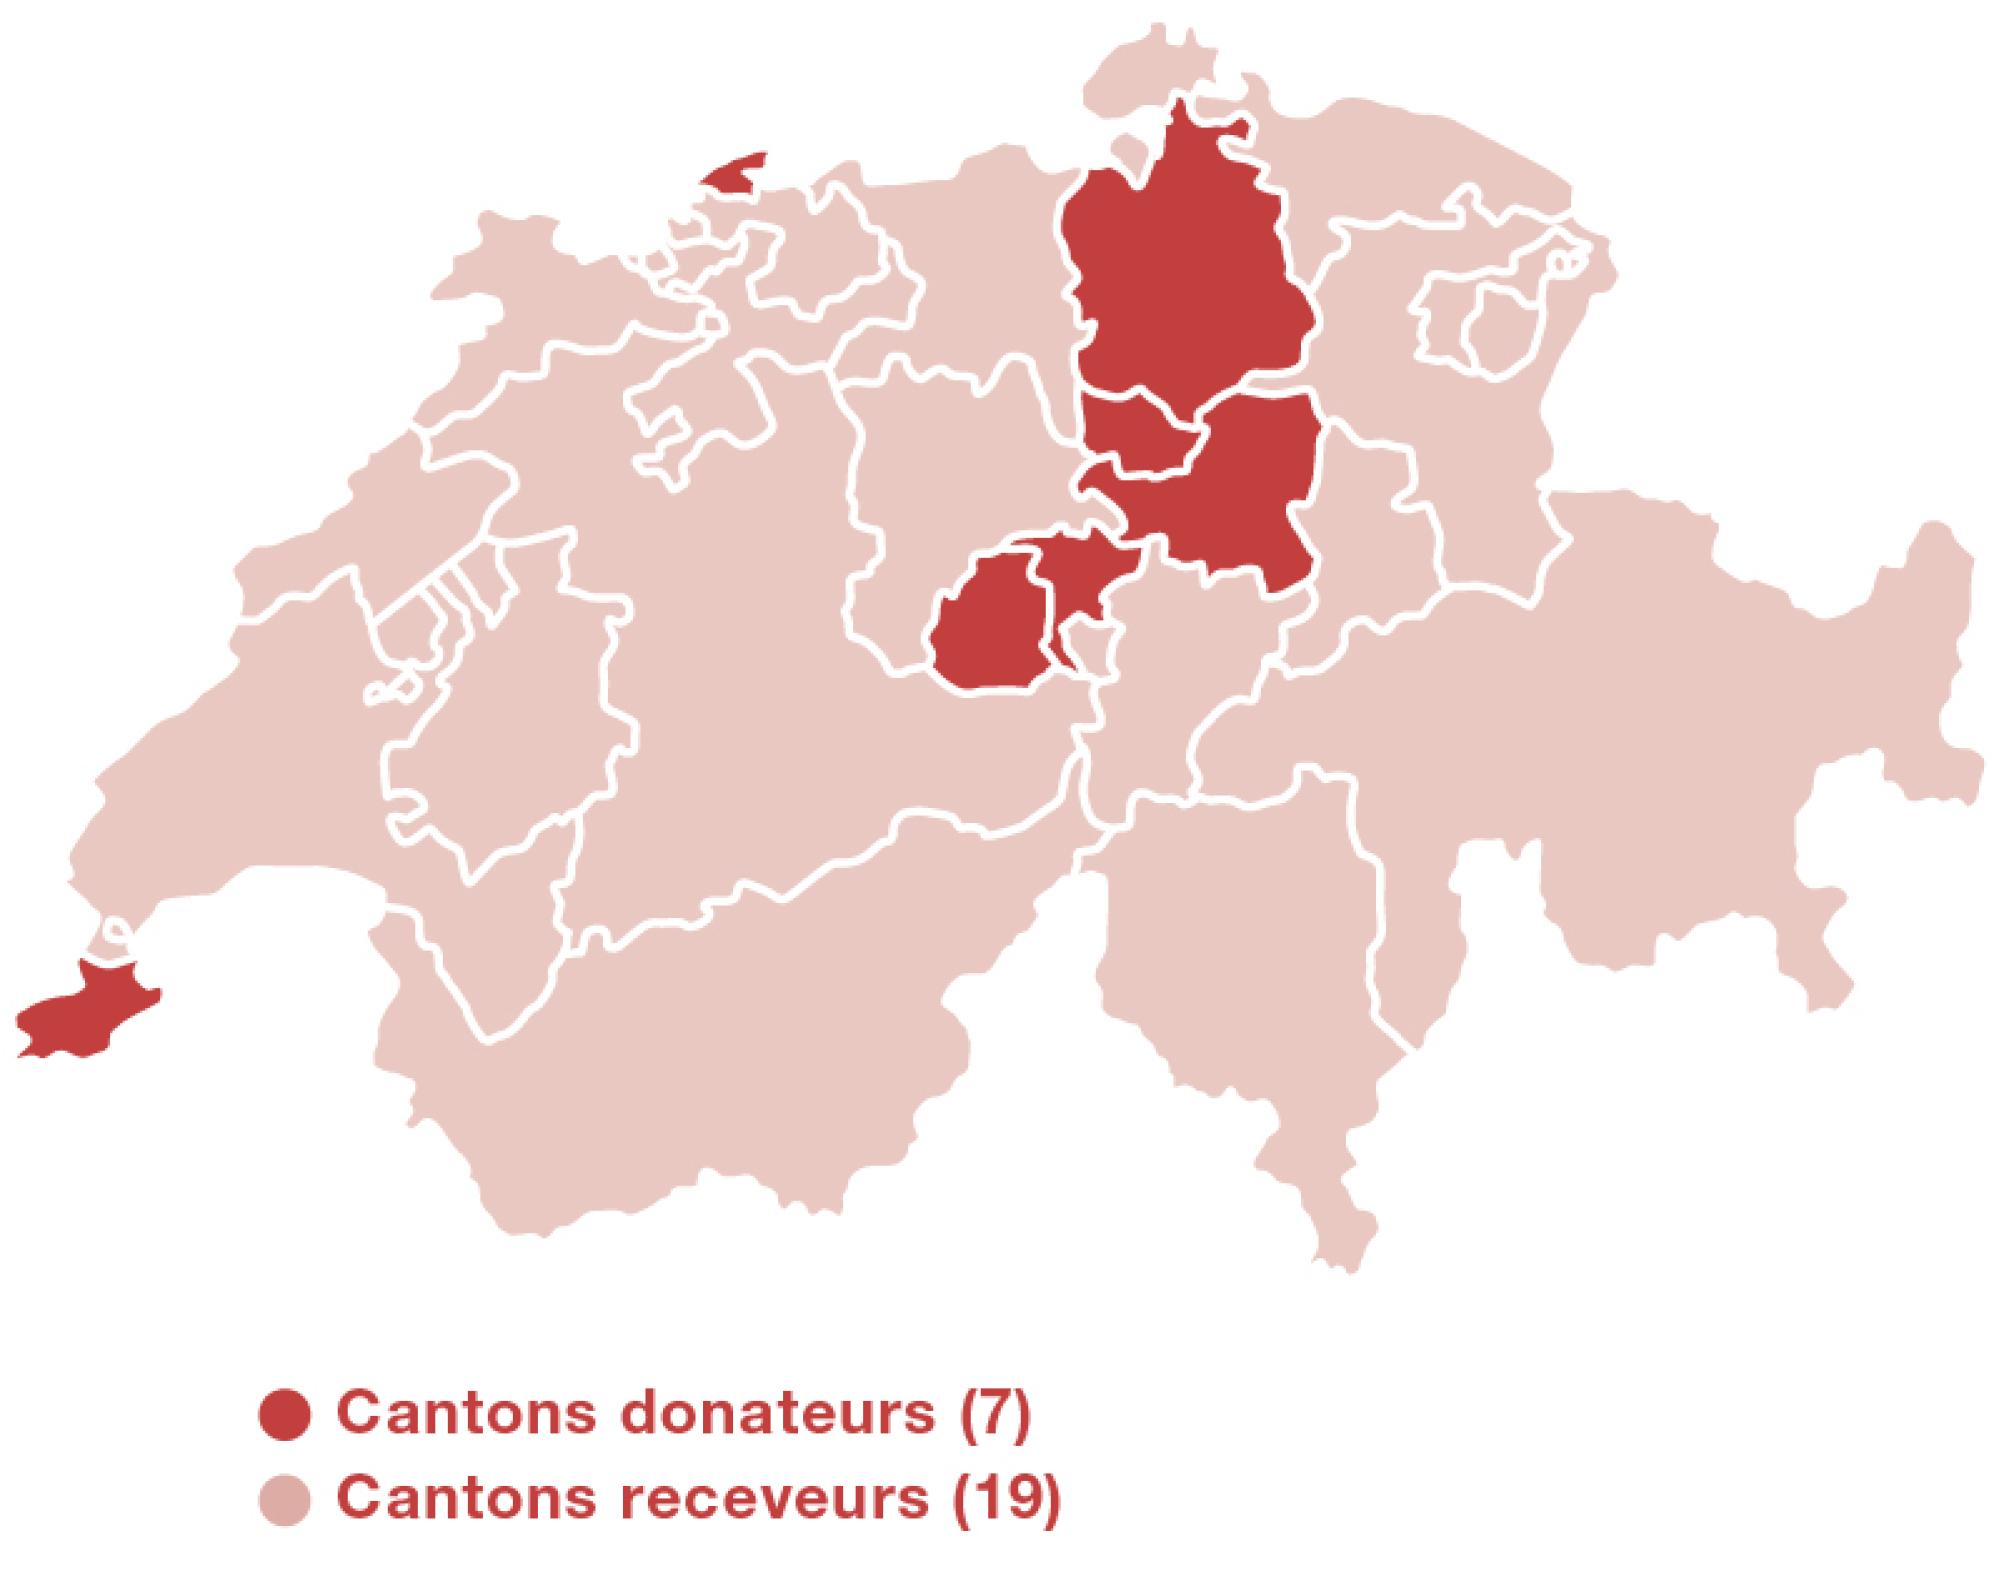 Carte de la Suisse avec contour des Cantons. Les Cantons contributeurs sont marqués en foncé. Il s'agit de Zoug, Schwytz, Nidwald, Genève, Bâle-Ville, Zürich et Obwald.